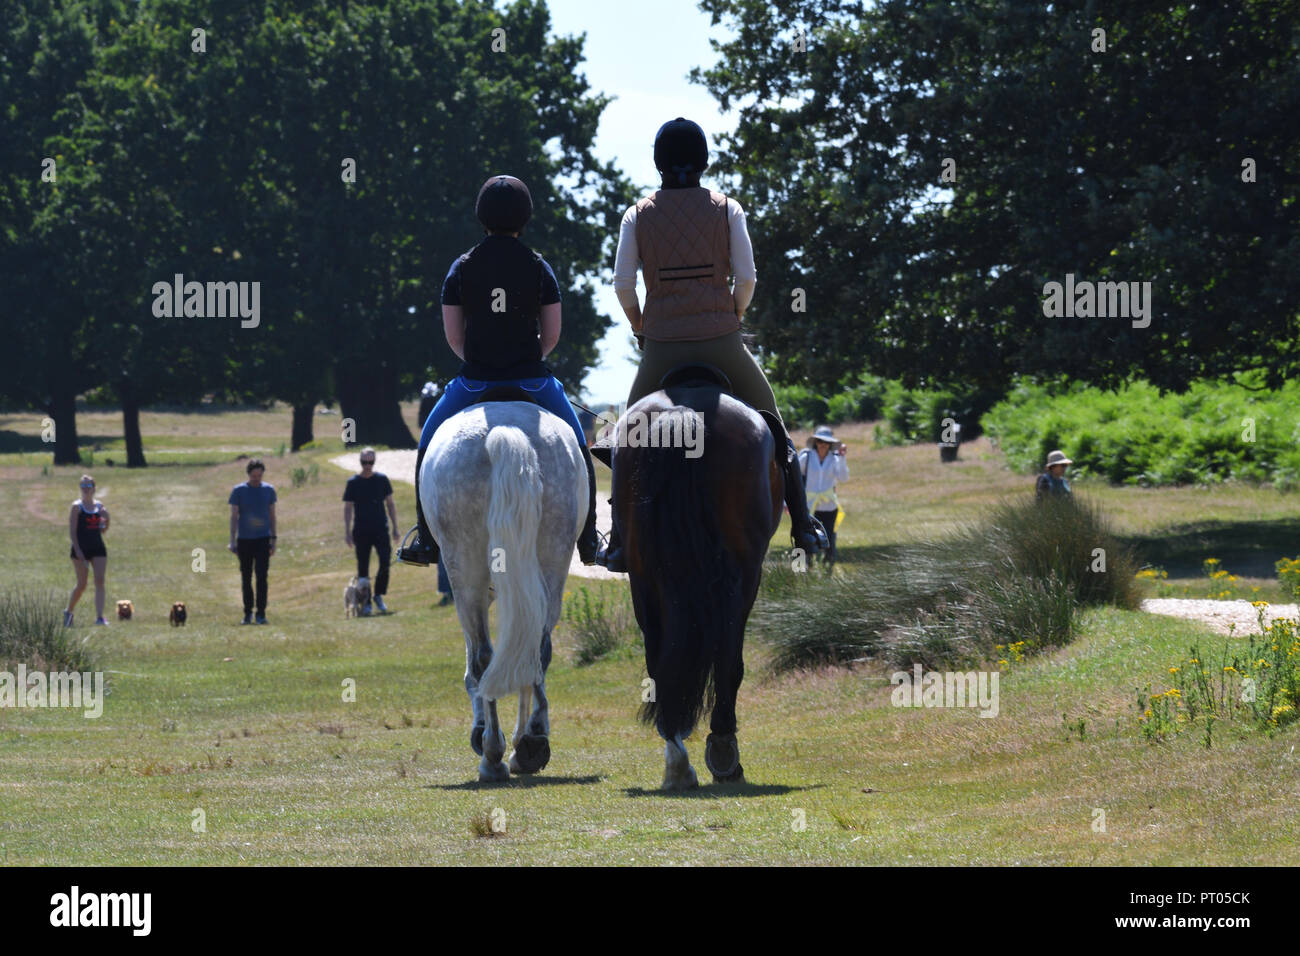 Domenica 2 luglio 2017 Richmond Park, London, Regno Unito. Due cavallo piloti in Richmond Park e altre persone a piedi godendo di una soleggiata giornata d'estate. Foto Stock